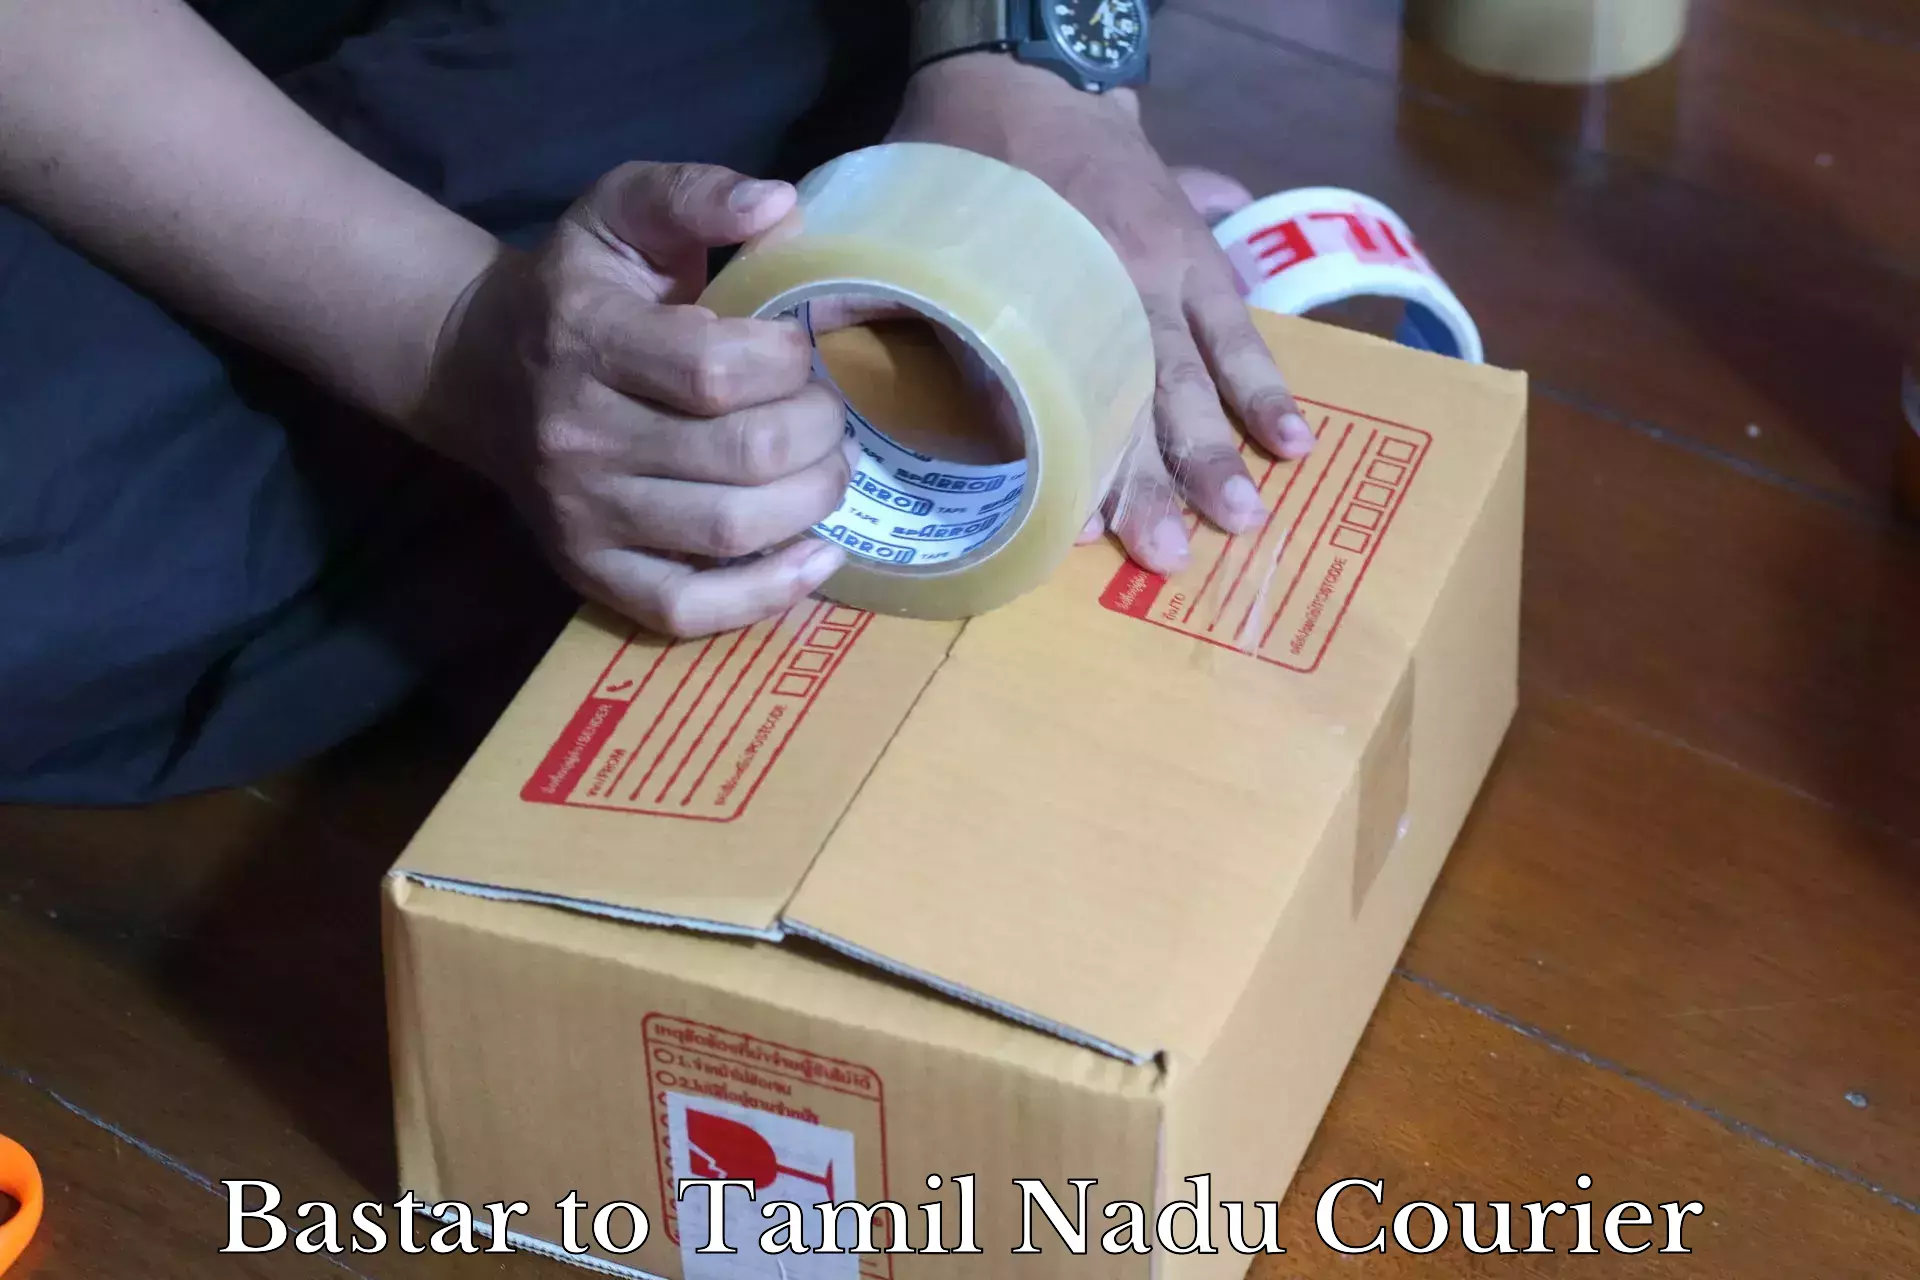 24-hour courier service Bastar to Ambattur